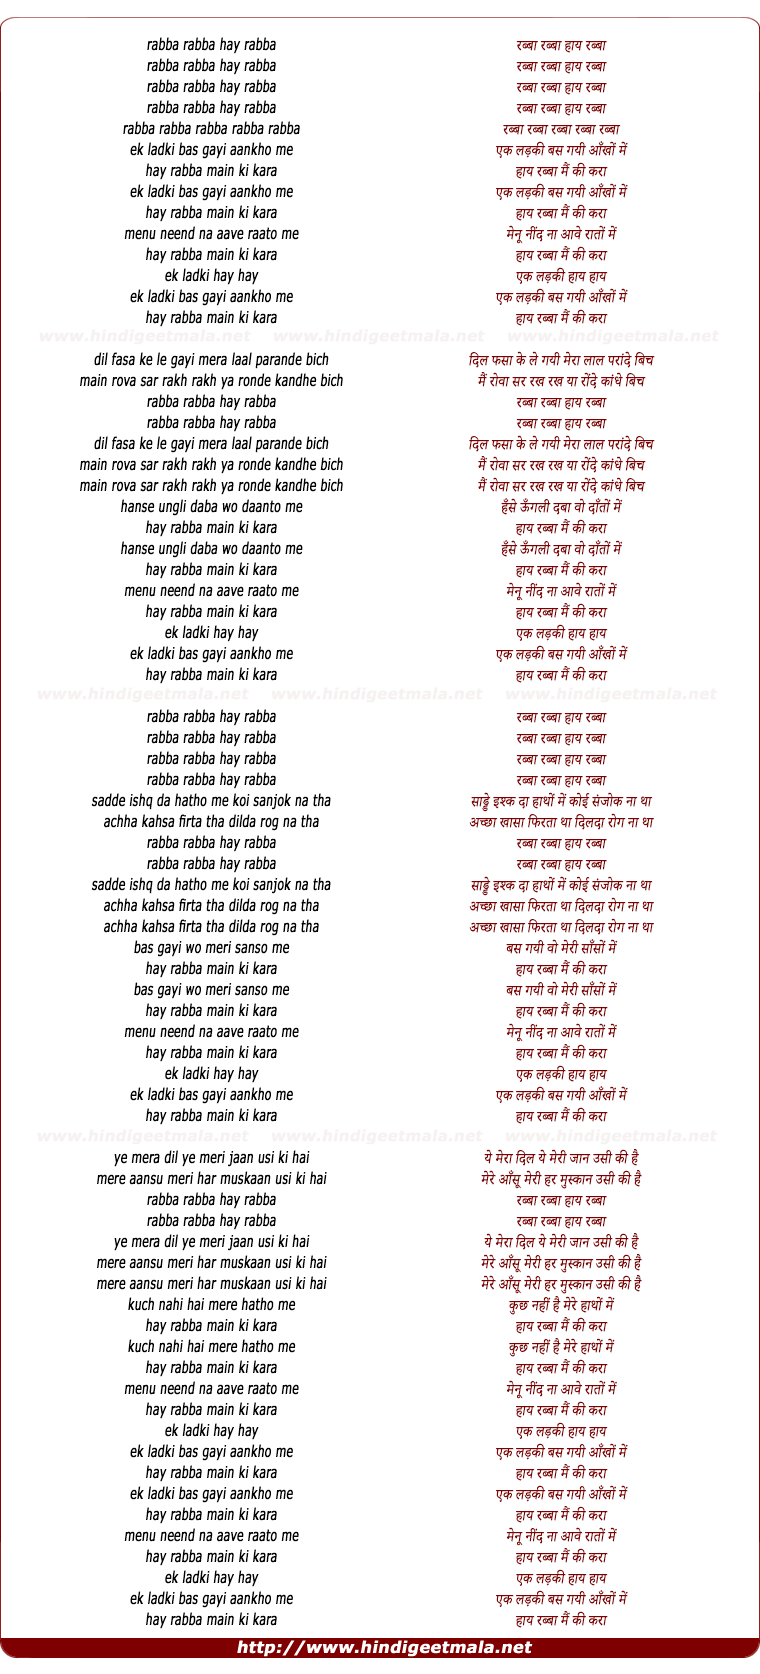 lyrics of song Ek Ladki Bas Gayi Aankhon Me